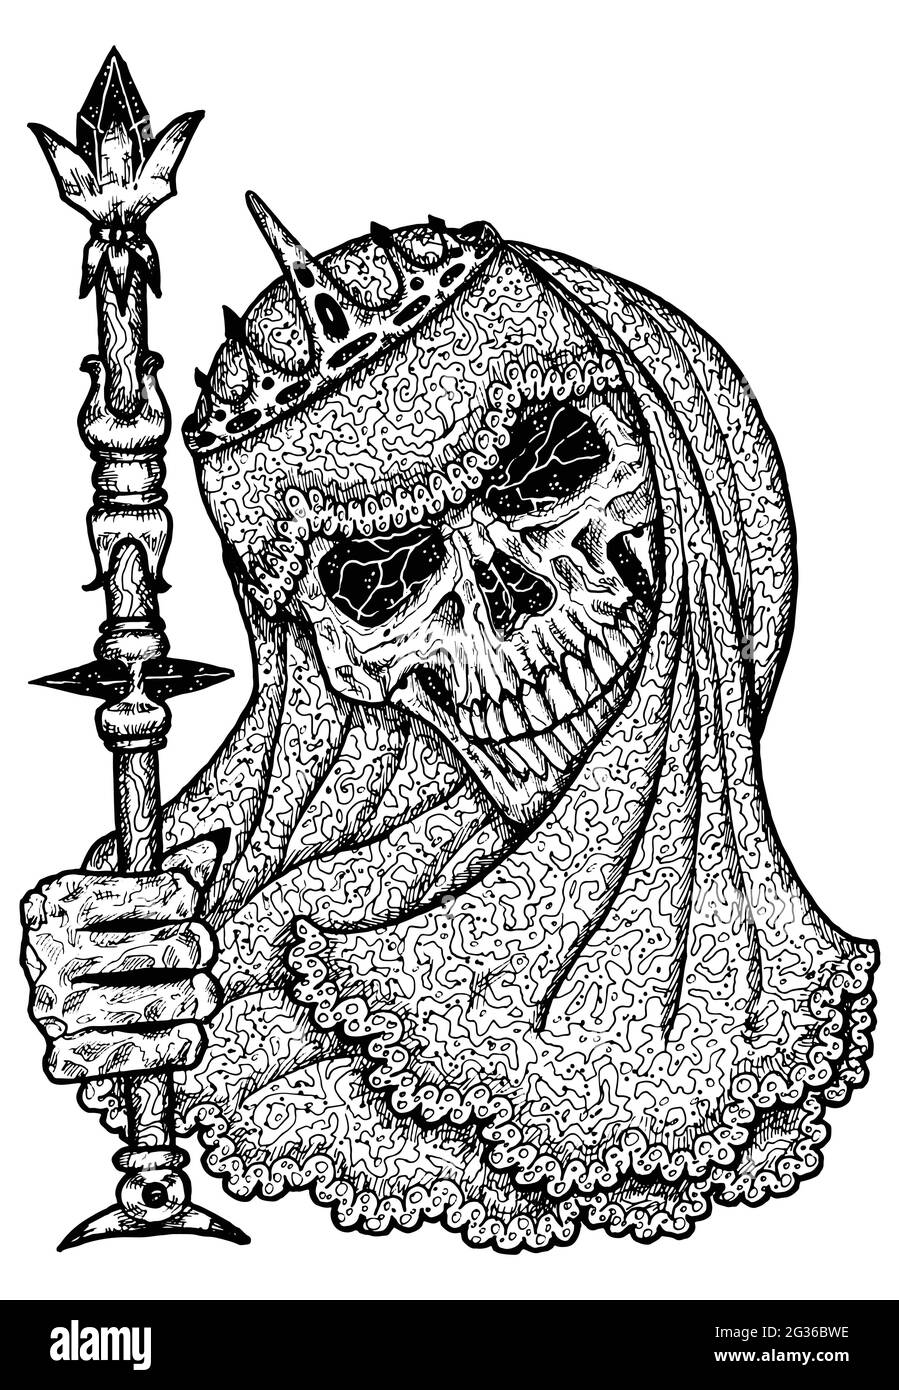 Schwarz und weiß gruselige Illustration von Vektor-Schädel halten Zauberstab tragen Brautveiling und Krone. Mystische isolierte Zeichnung für Halloween mit esoterischen, Stock Vektor